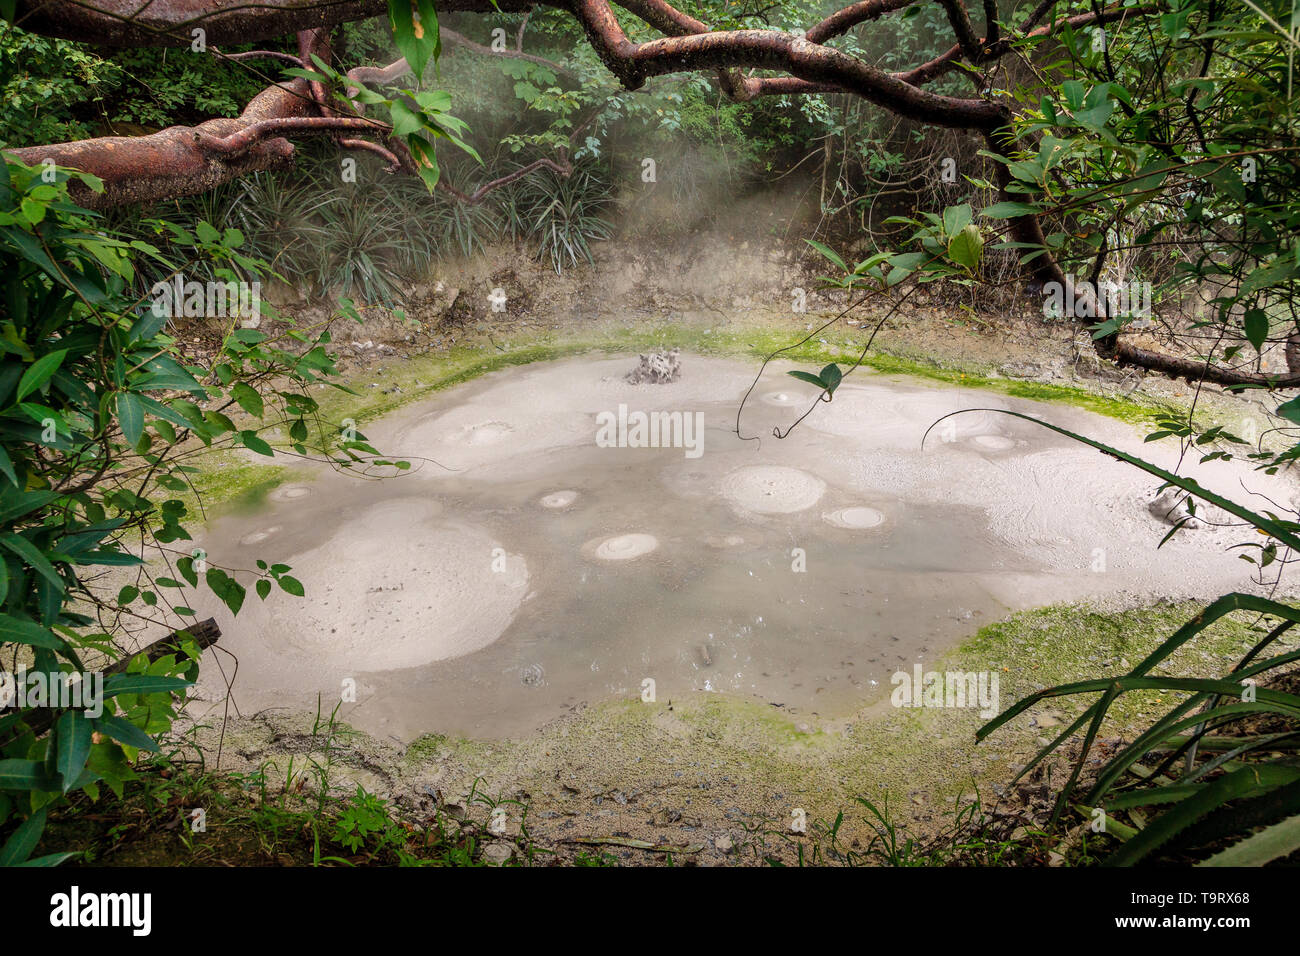 View of boiling mud pot in Rincon de la Vieja National Park in Costa Rica Stock Photo